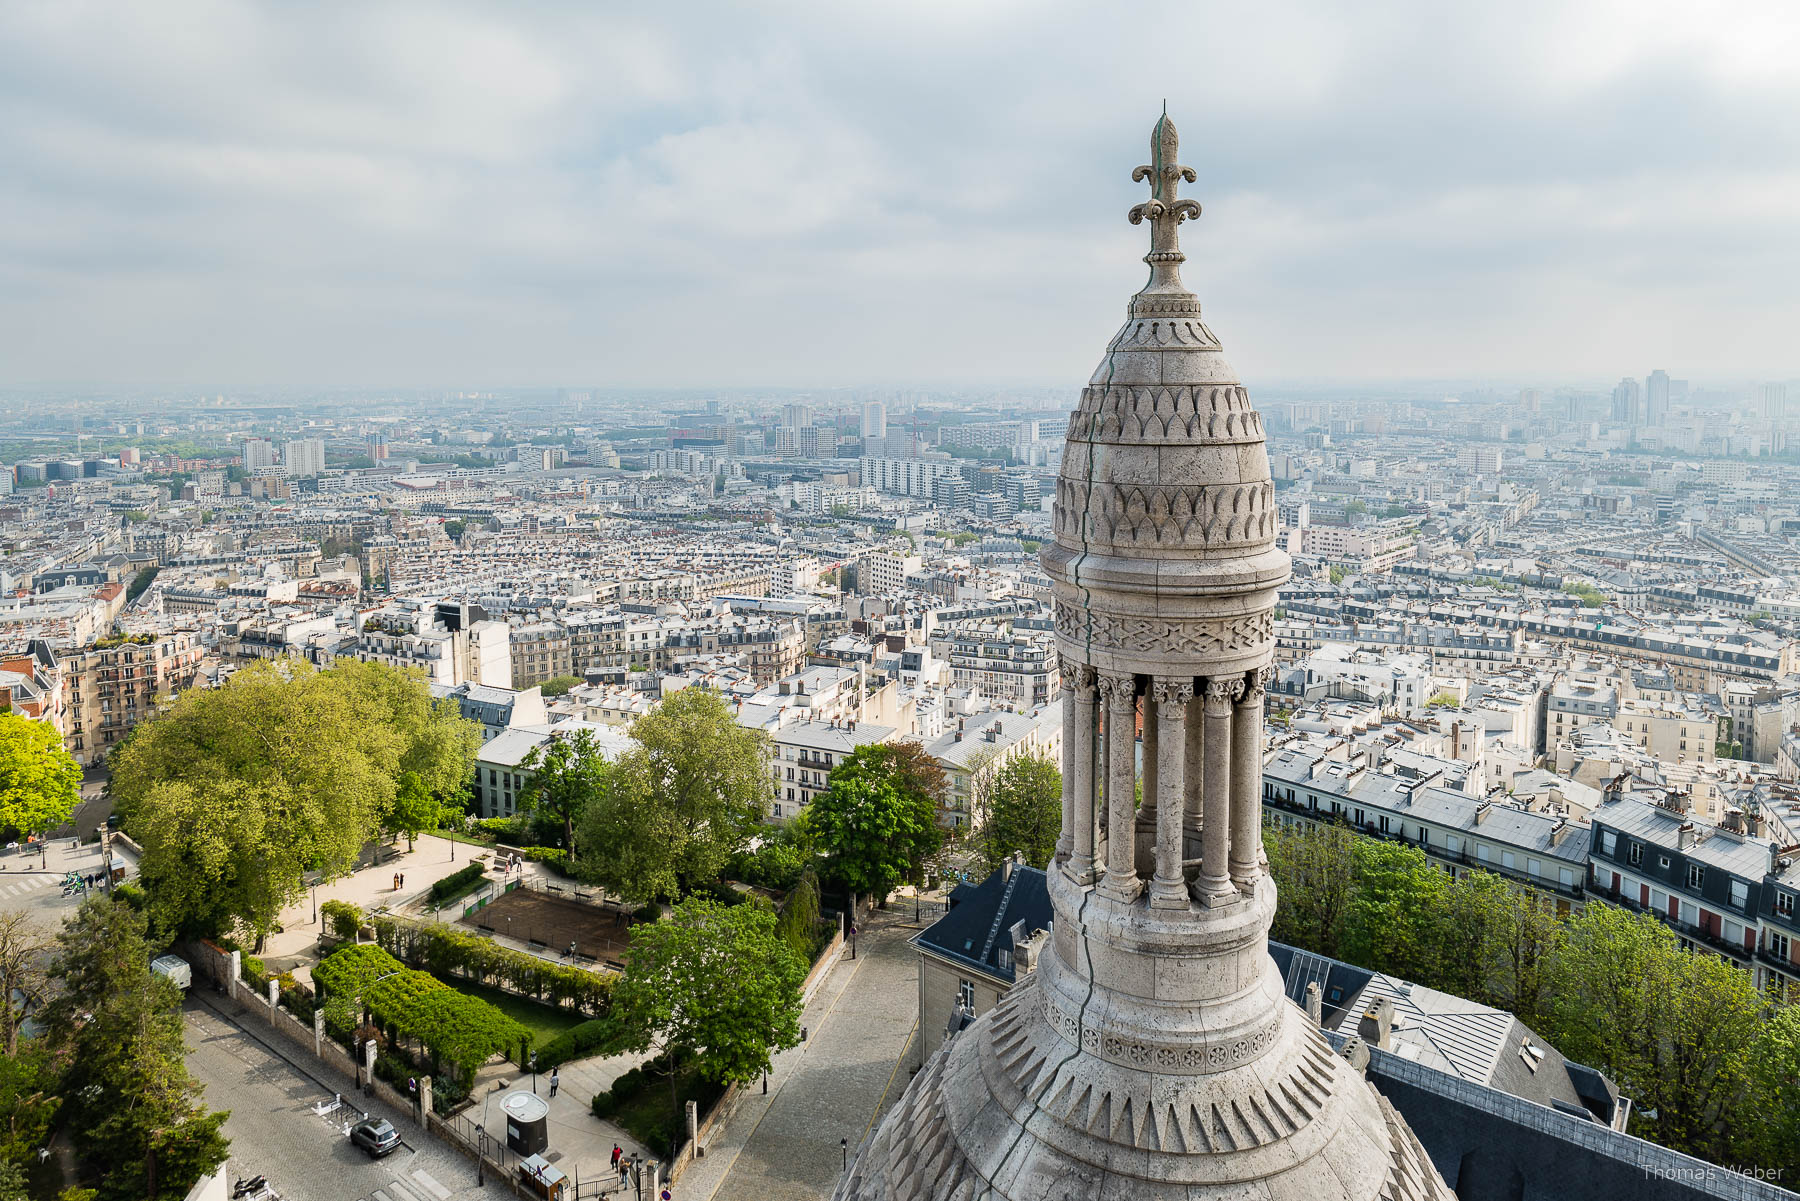 Die Basilique du Sacré-Cœur de Montmartre in Paris, Fotograf Thomas Weber aus Oldenburg